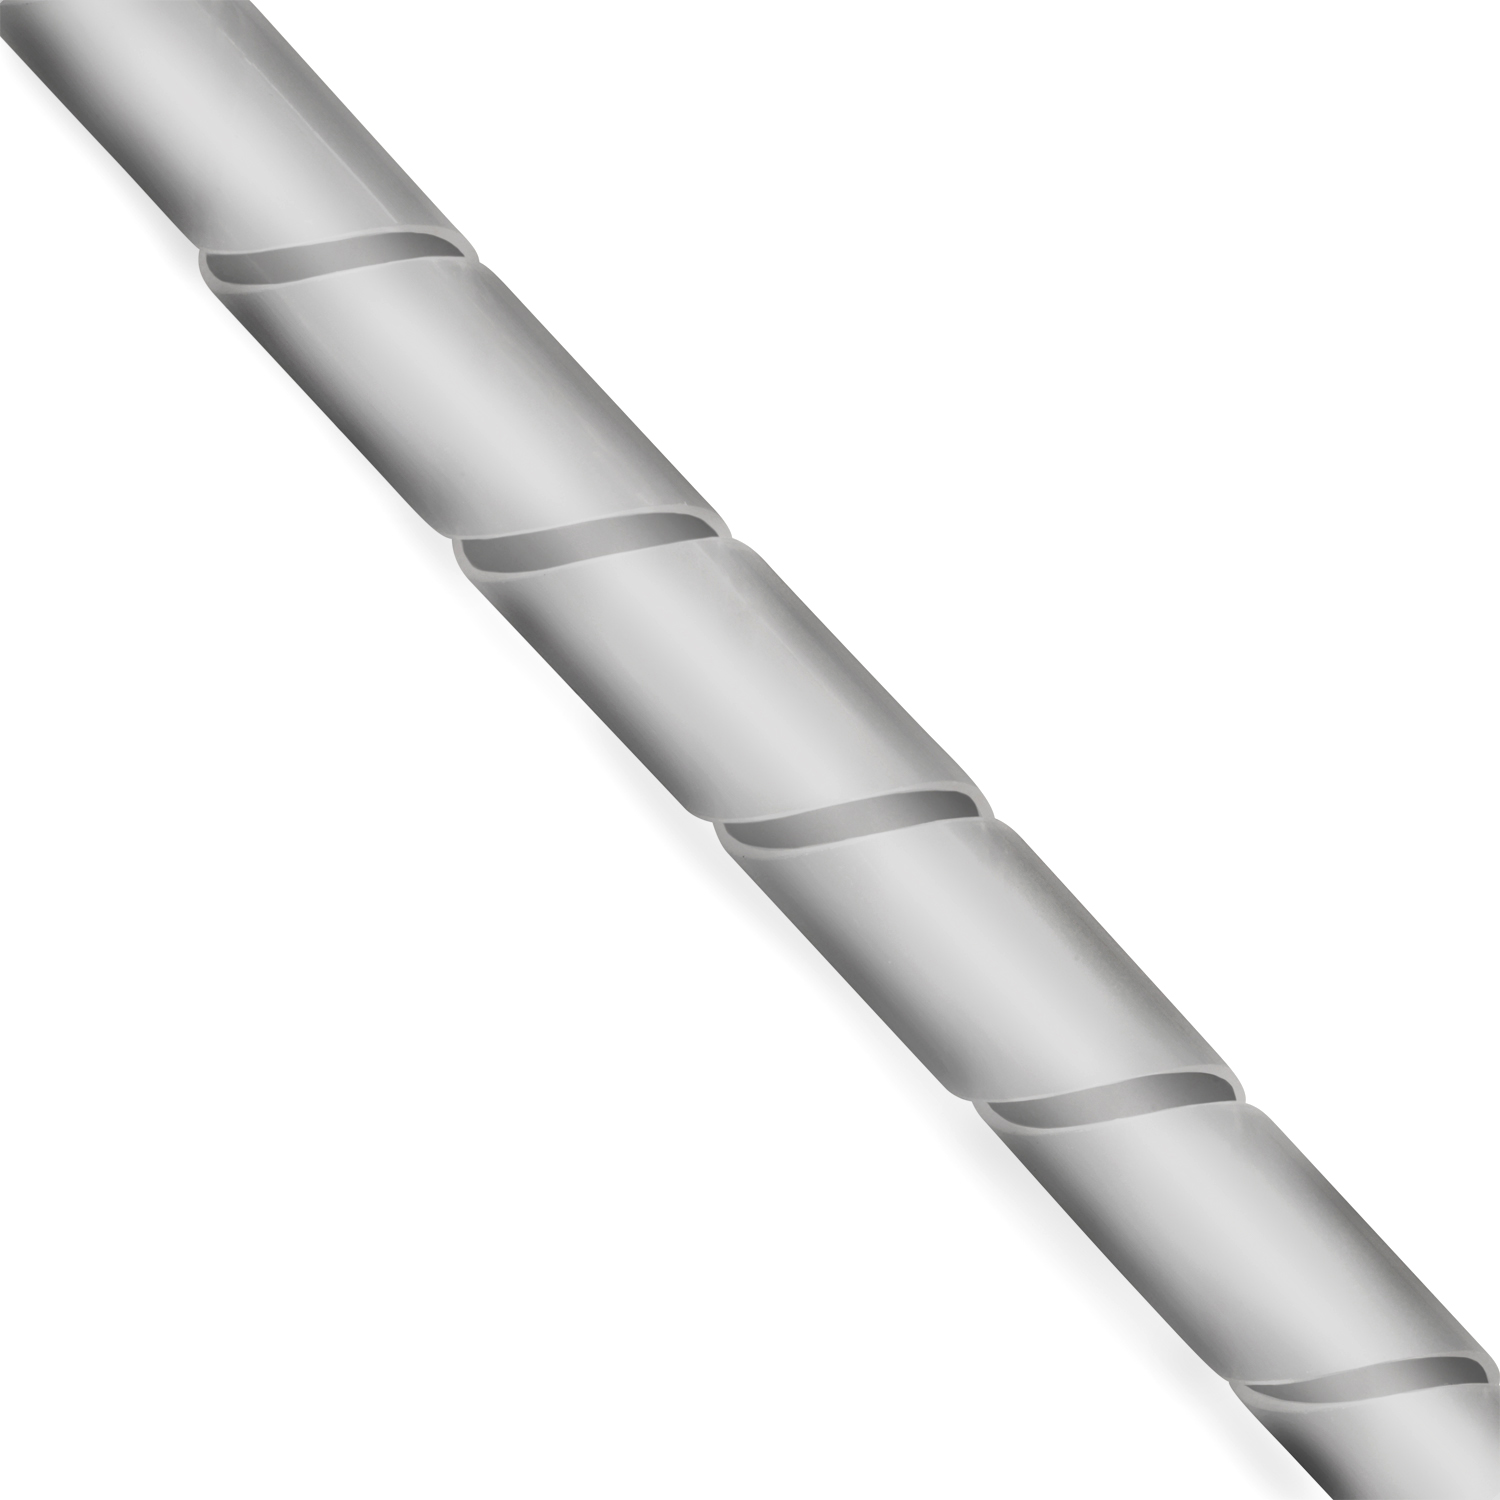 TPFNET Premium Spiral-Kabelschlauch Silber, 6-60mm, Silber 10m Kabelschlauch